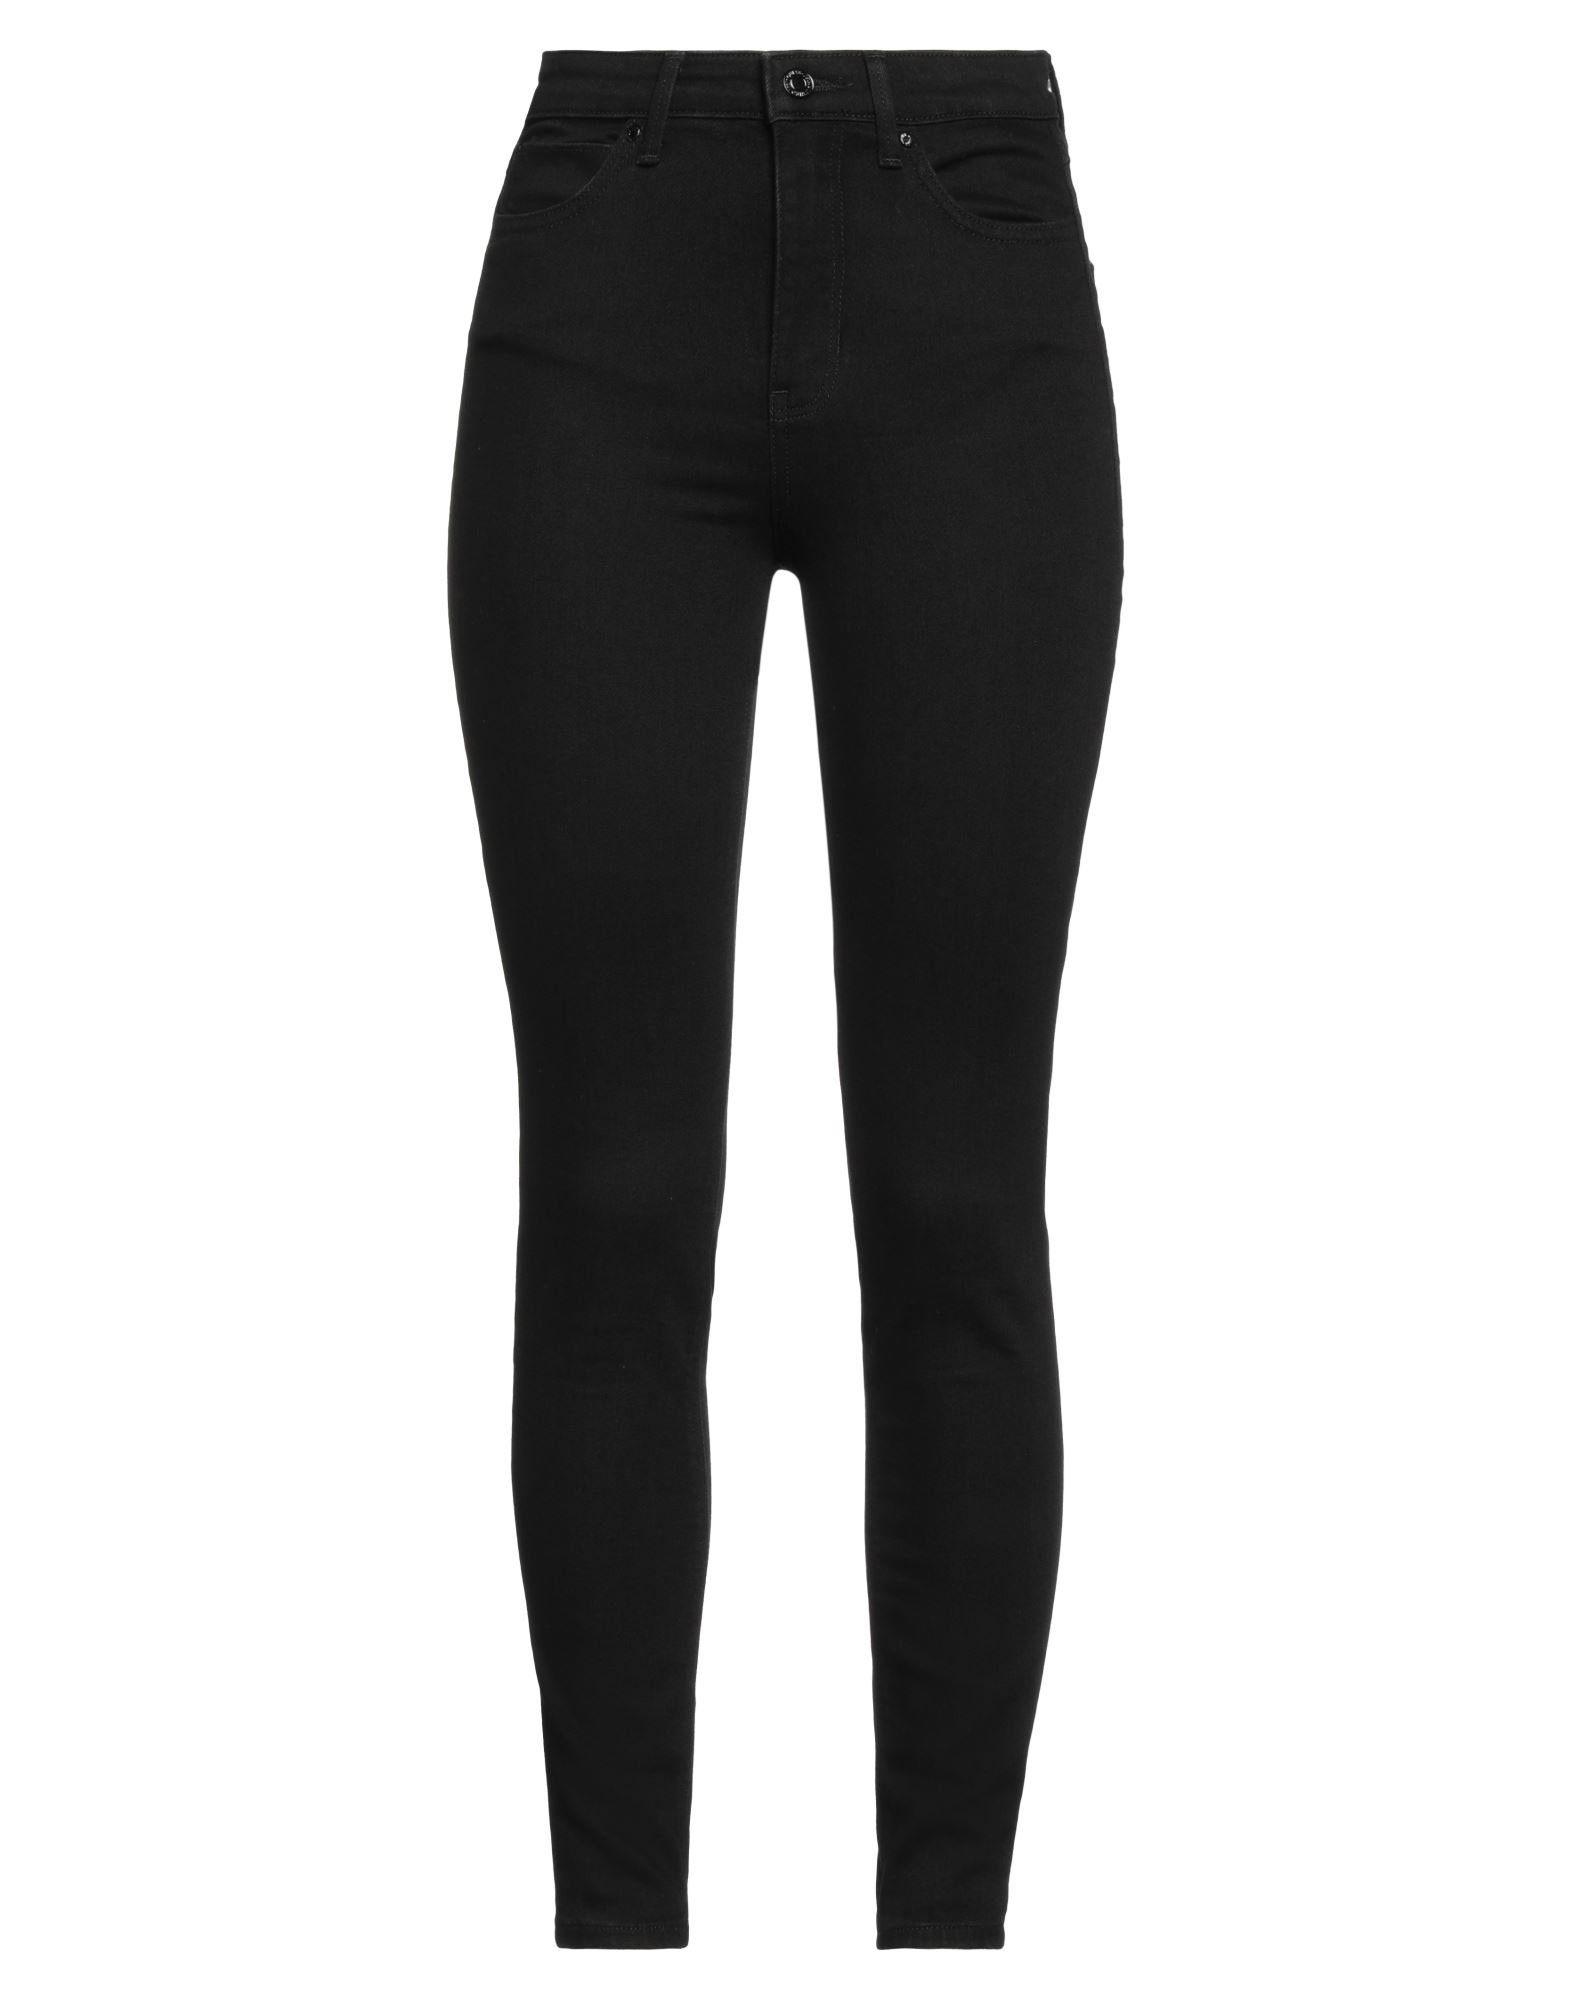 Shop Guess Woman Jeans Black Size 29w-29l Cotton, Elastomultiester, Elastane